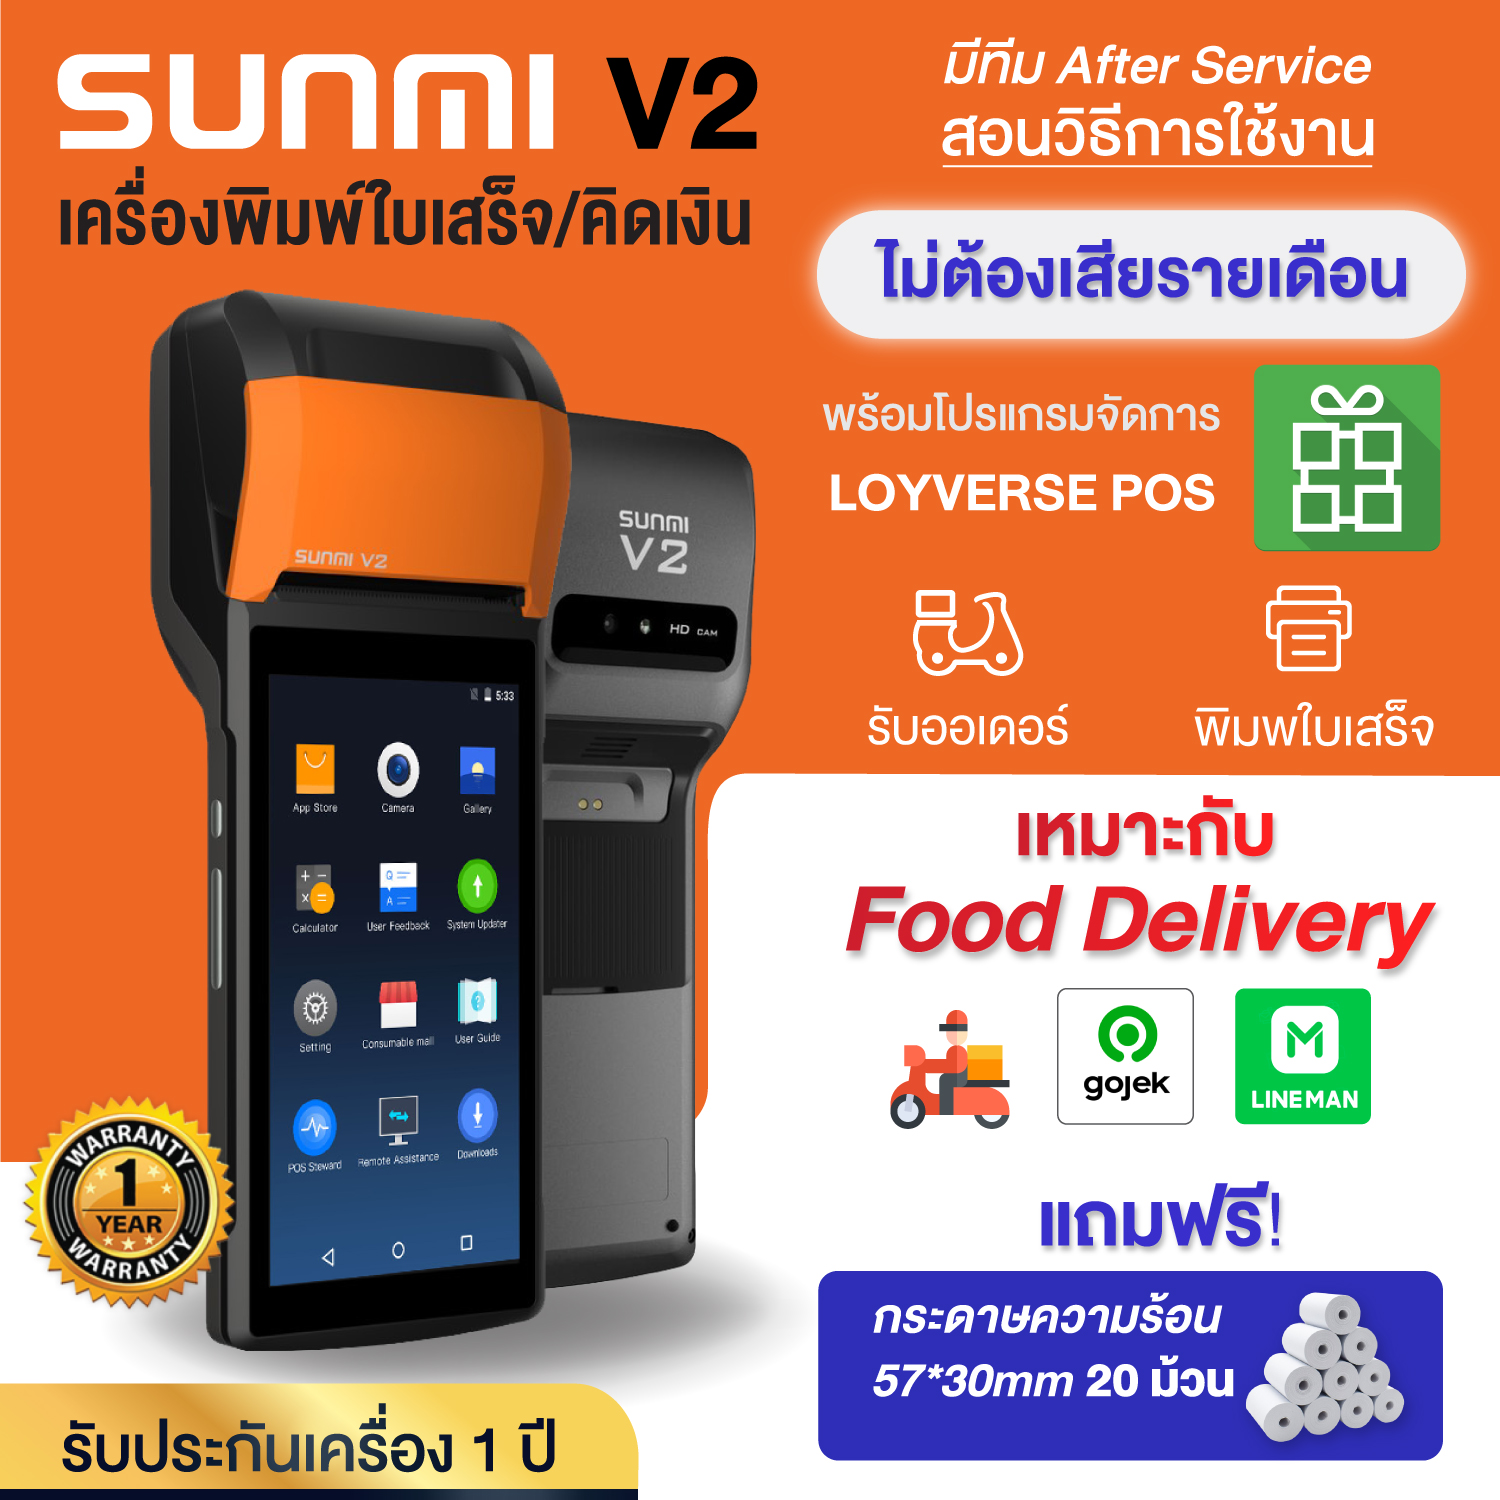 (ใหม่ 2021)SUNMI V2 เครื่องคิดเงิน Graบ lineman gojek เครื่องรับออเดอร์ food delivery พิมพ์ใบเสร็จ All in One พร้อมปริ๊น 3G/4G/Wifi/Bluetooth โปรแกรมขายหน้าร้าน Loyverse POS